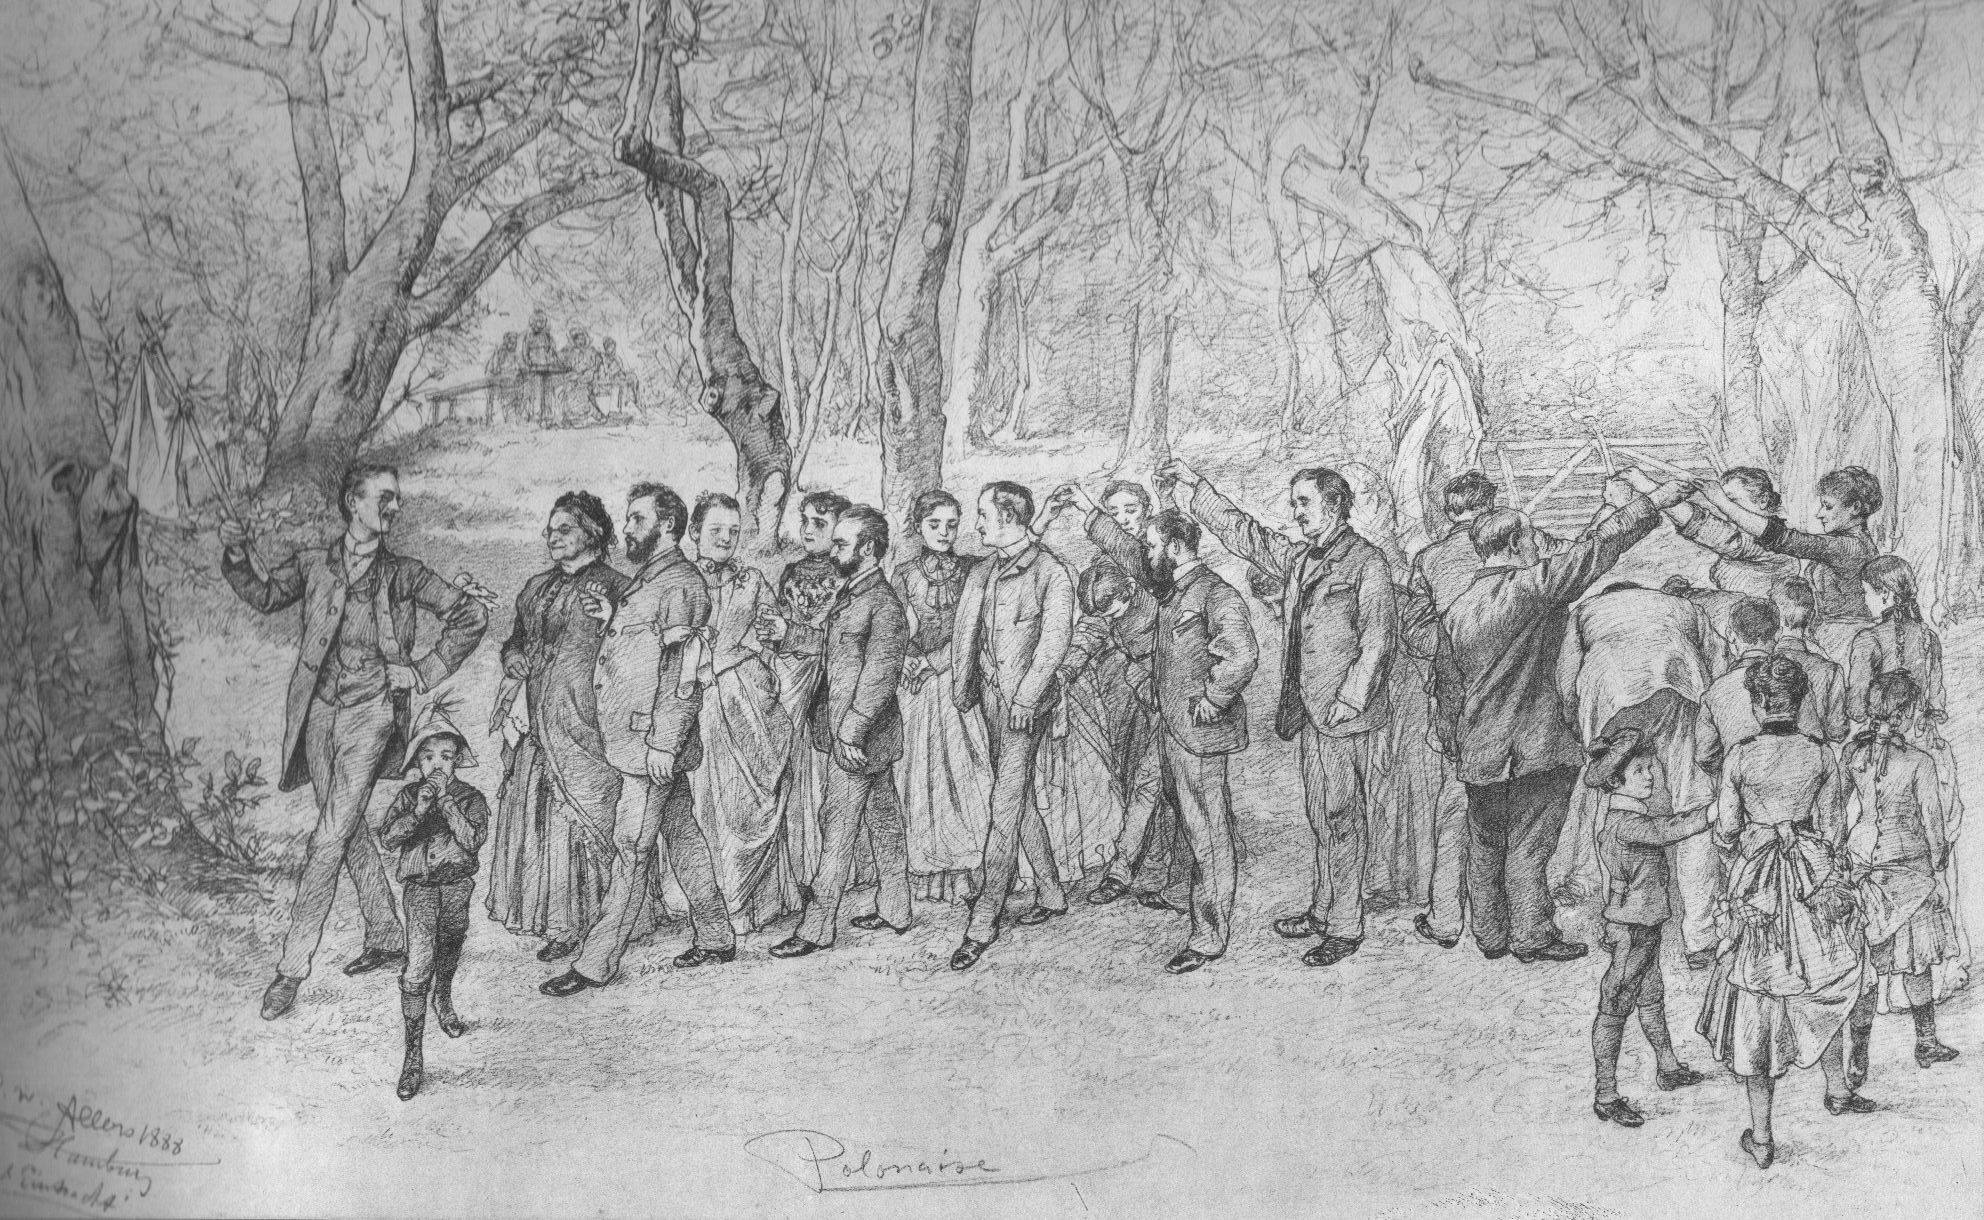 Dorośli i dzieci w surdutach i długich sukniach tańczą w parku poloneza - rysunek ołówkiem z adnotacjami: Polonaise i datą 1888.